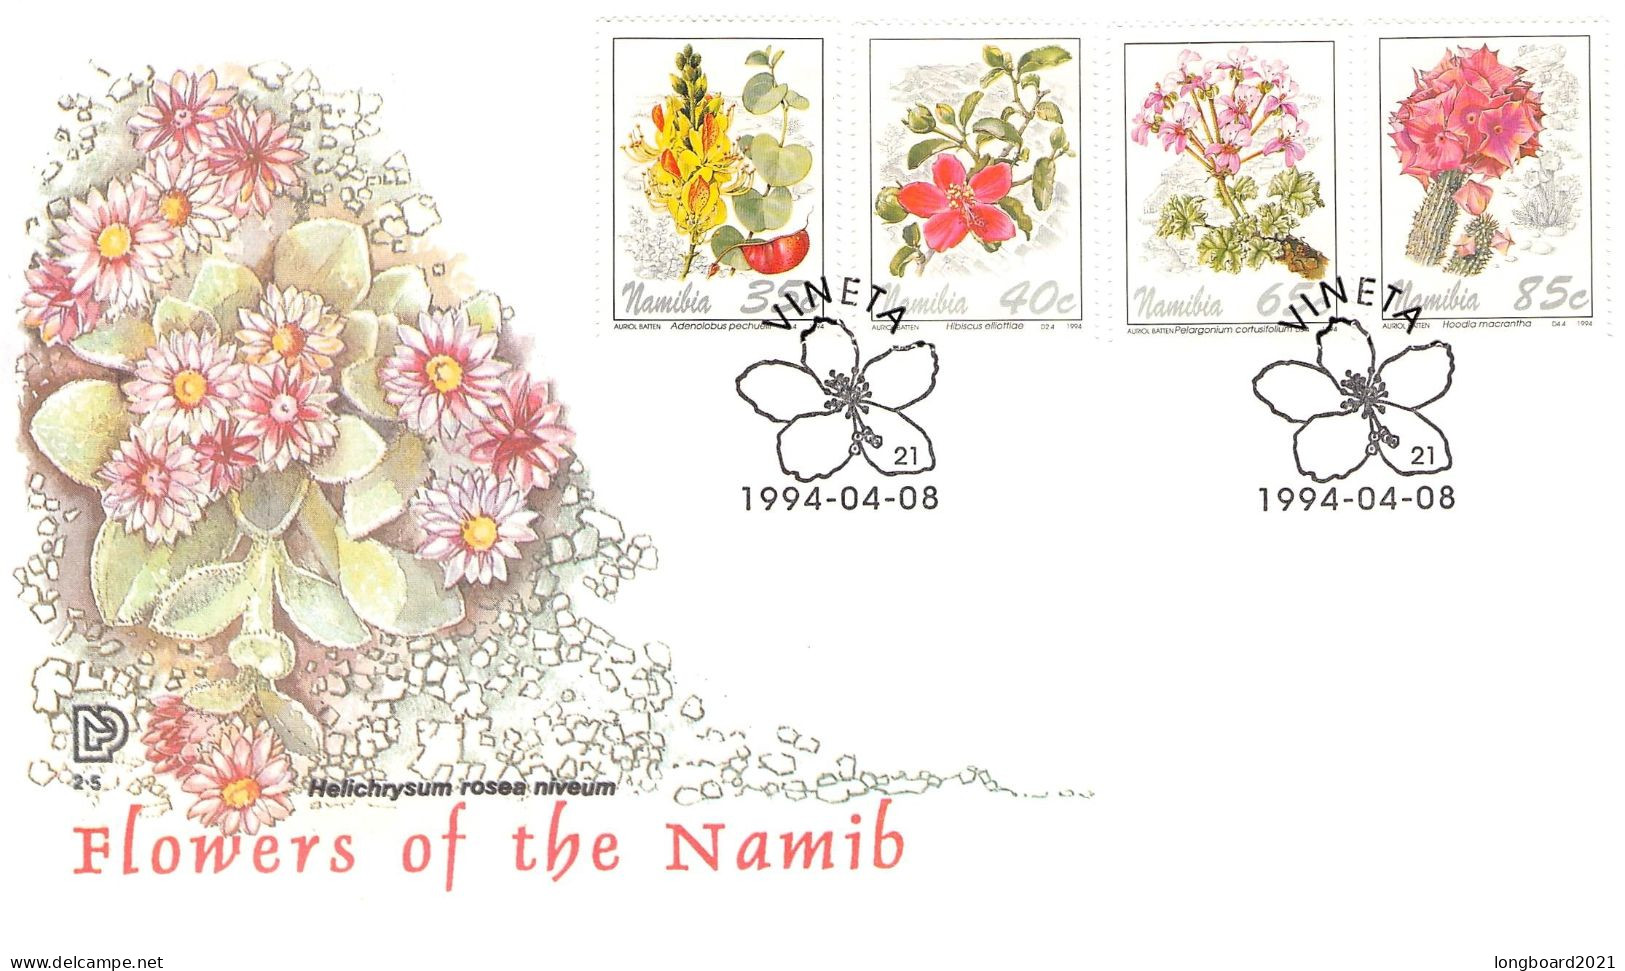 NAMIBIA - FDC 1994 FLOWERS OF THE NAMIB / 4317 - Namibia (1990- ...)